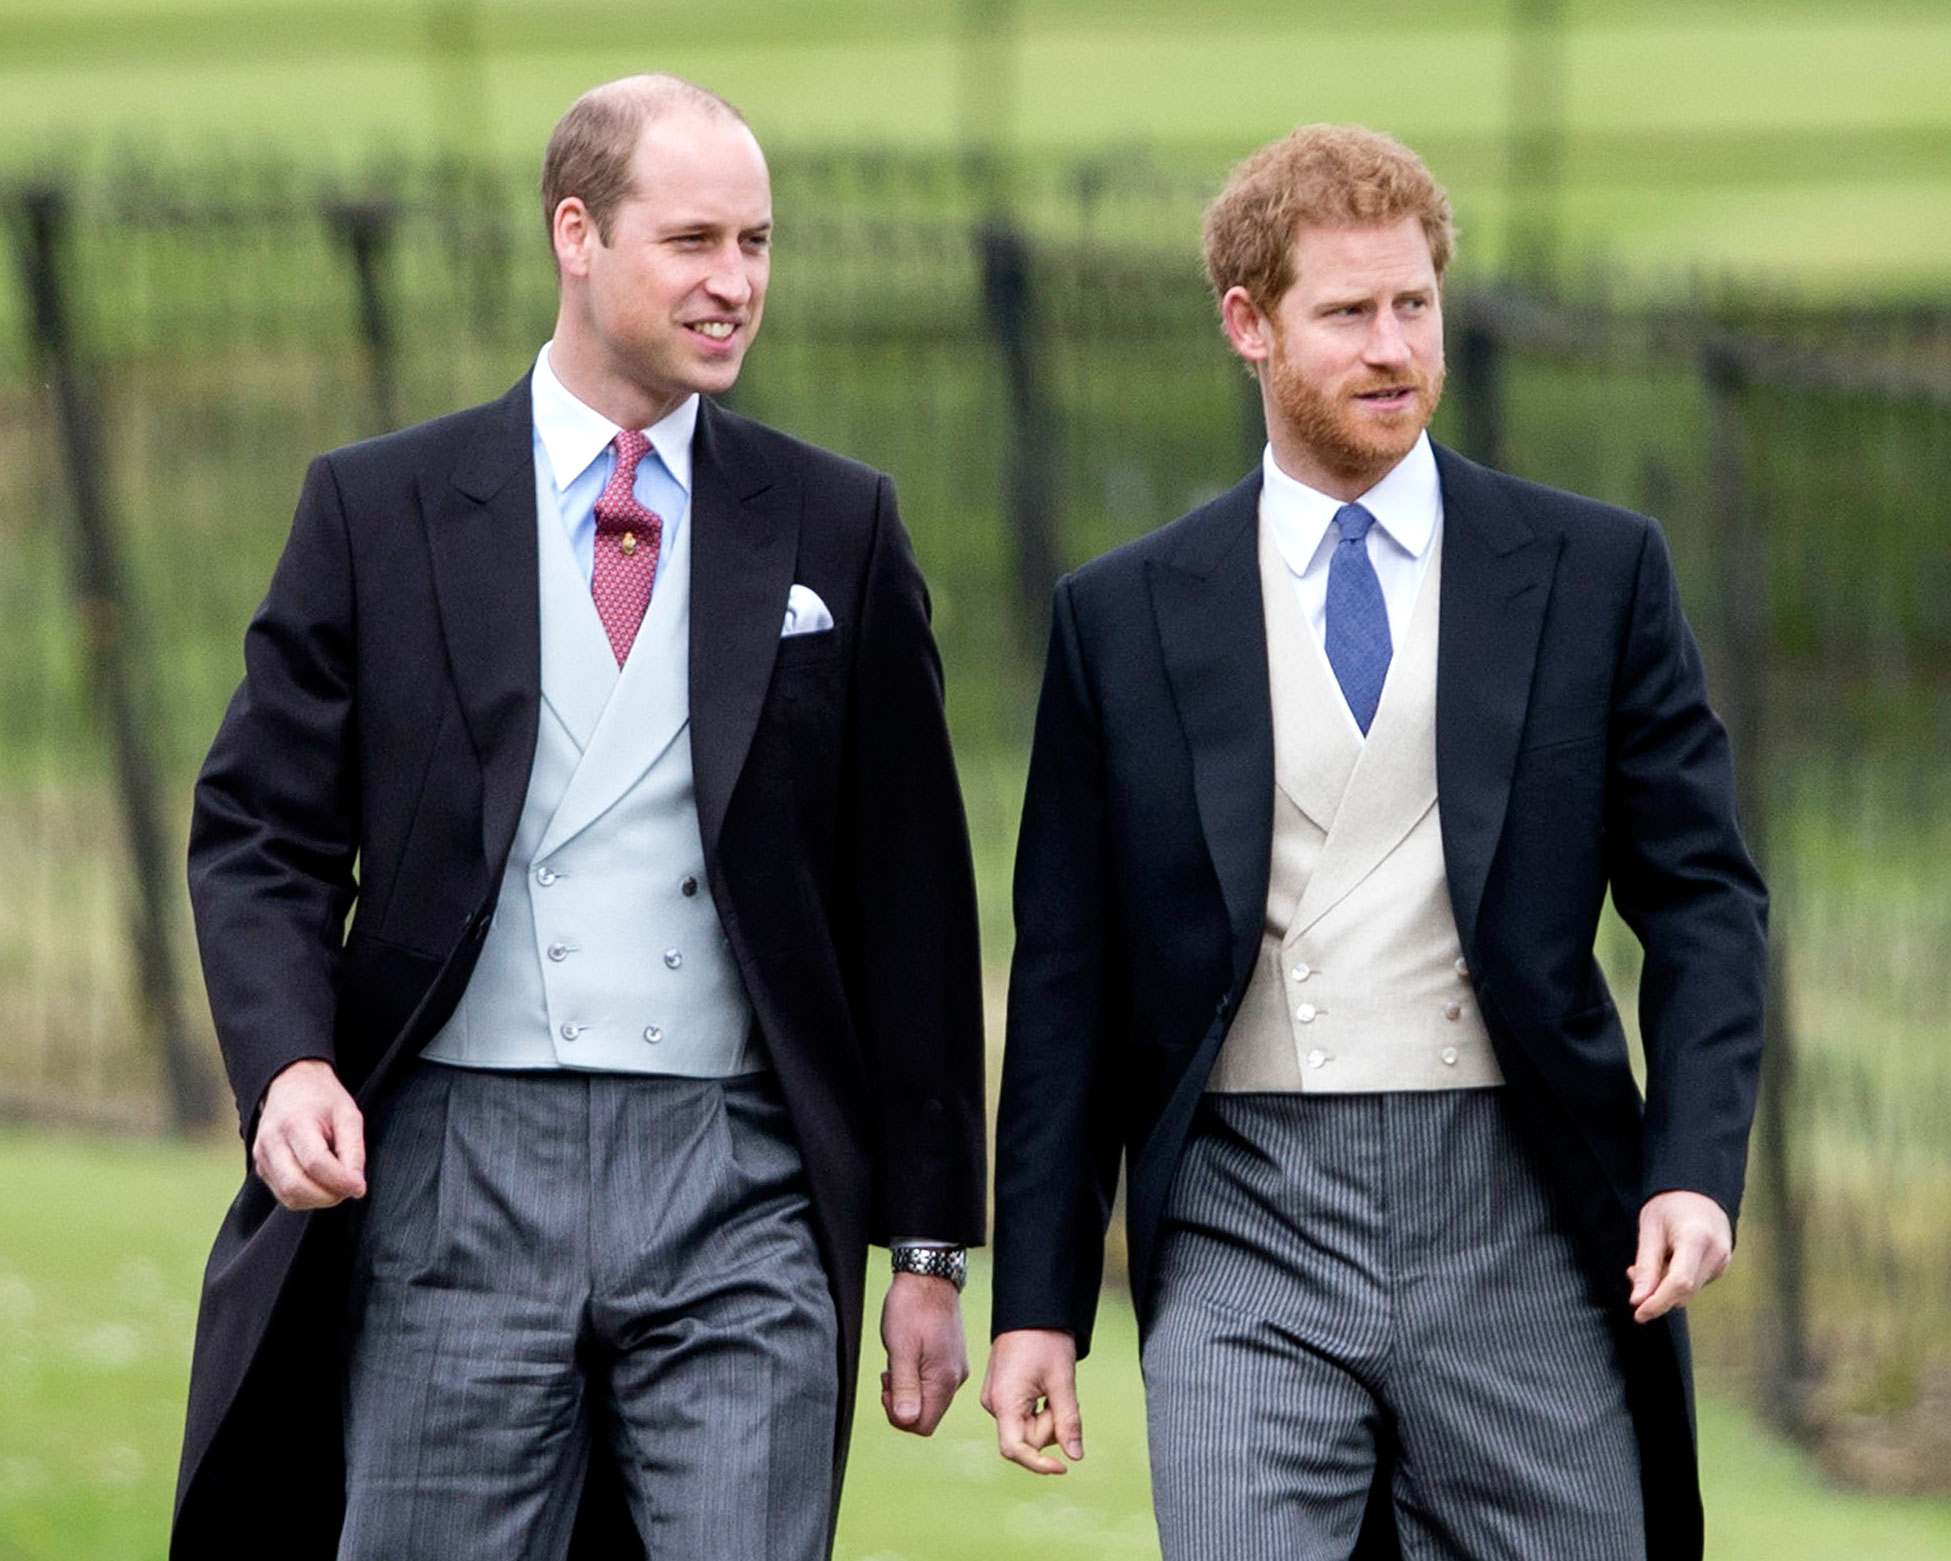 Le prince William réagit aux déclarations du prince Harry : "J'espère qu'il va bien"